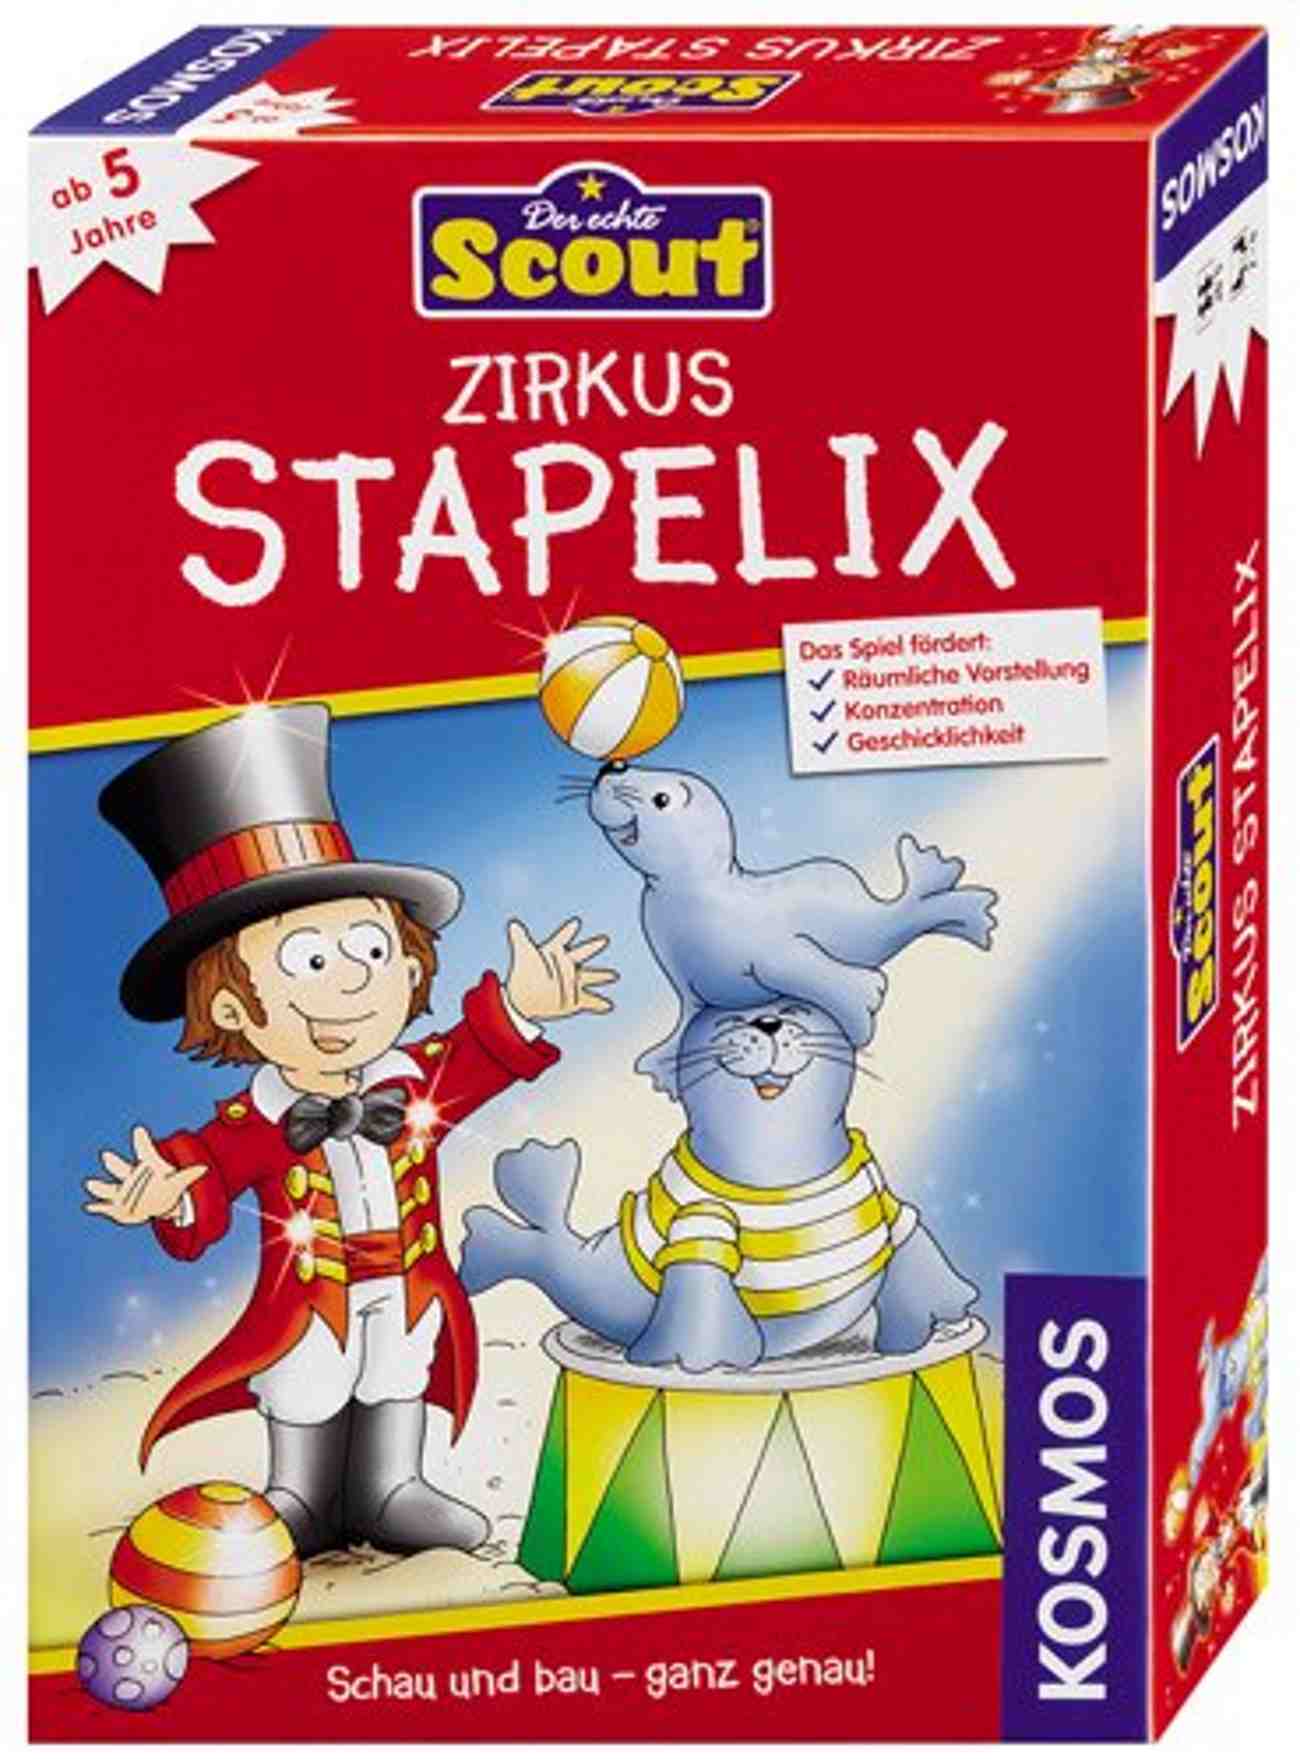 Zirkus Stapelix – Scout 0 (0)